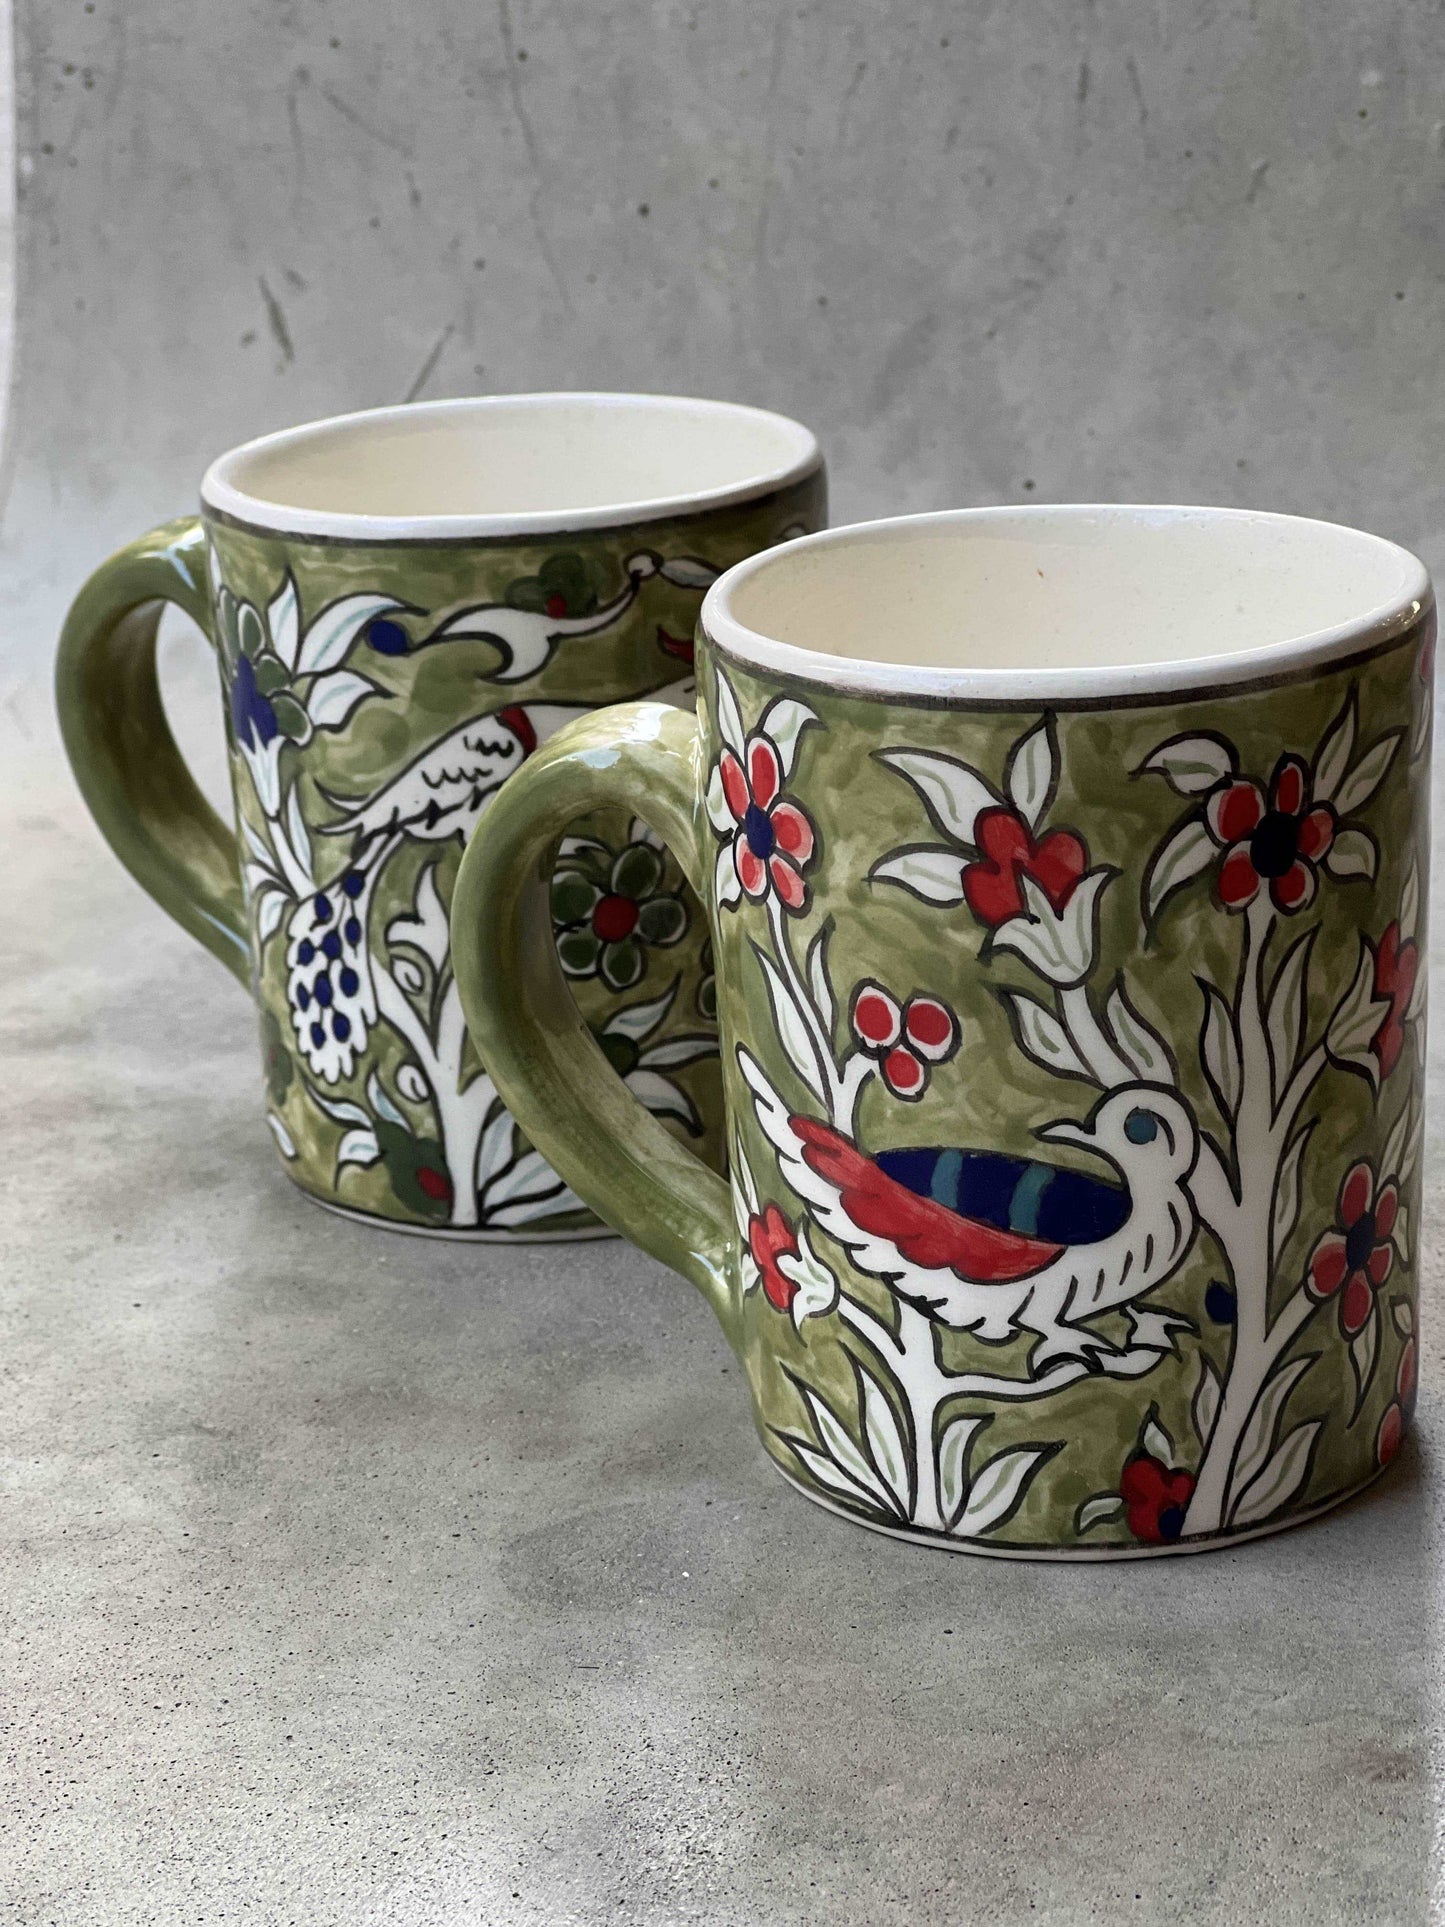 Armenian Ceramic Mugs